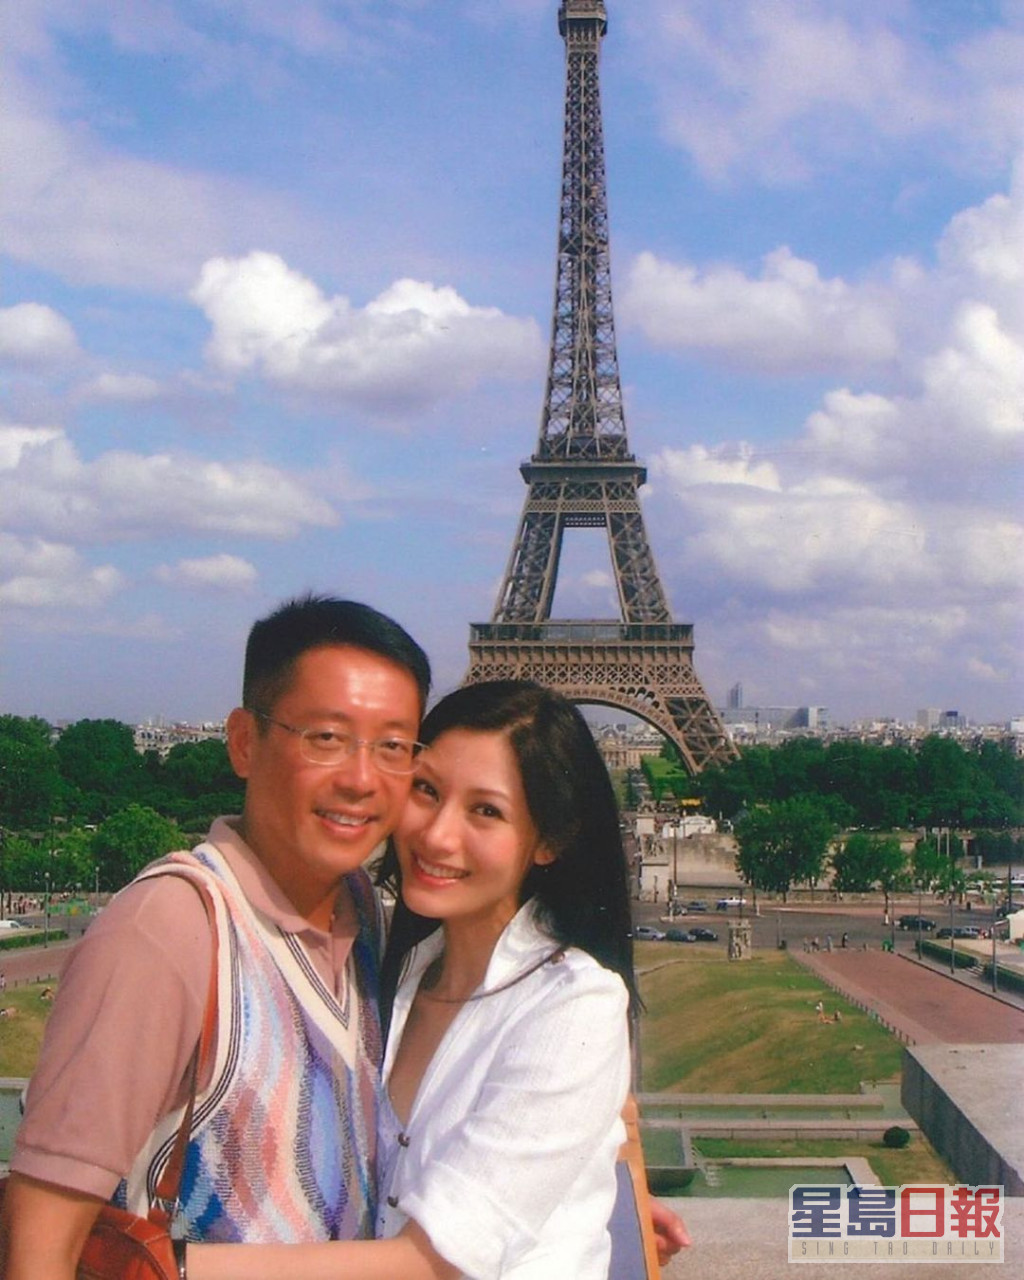 李嘉欣与富商许晋亨于2008年结婚。